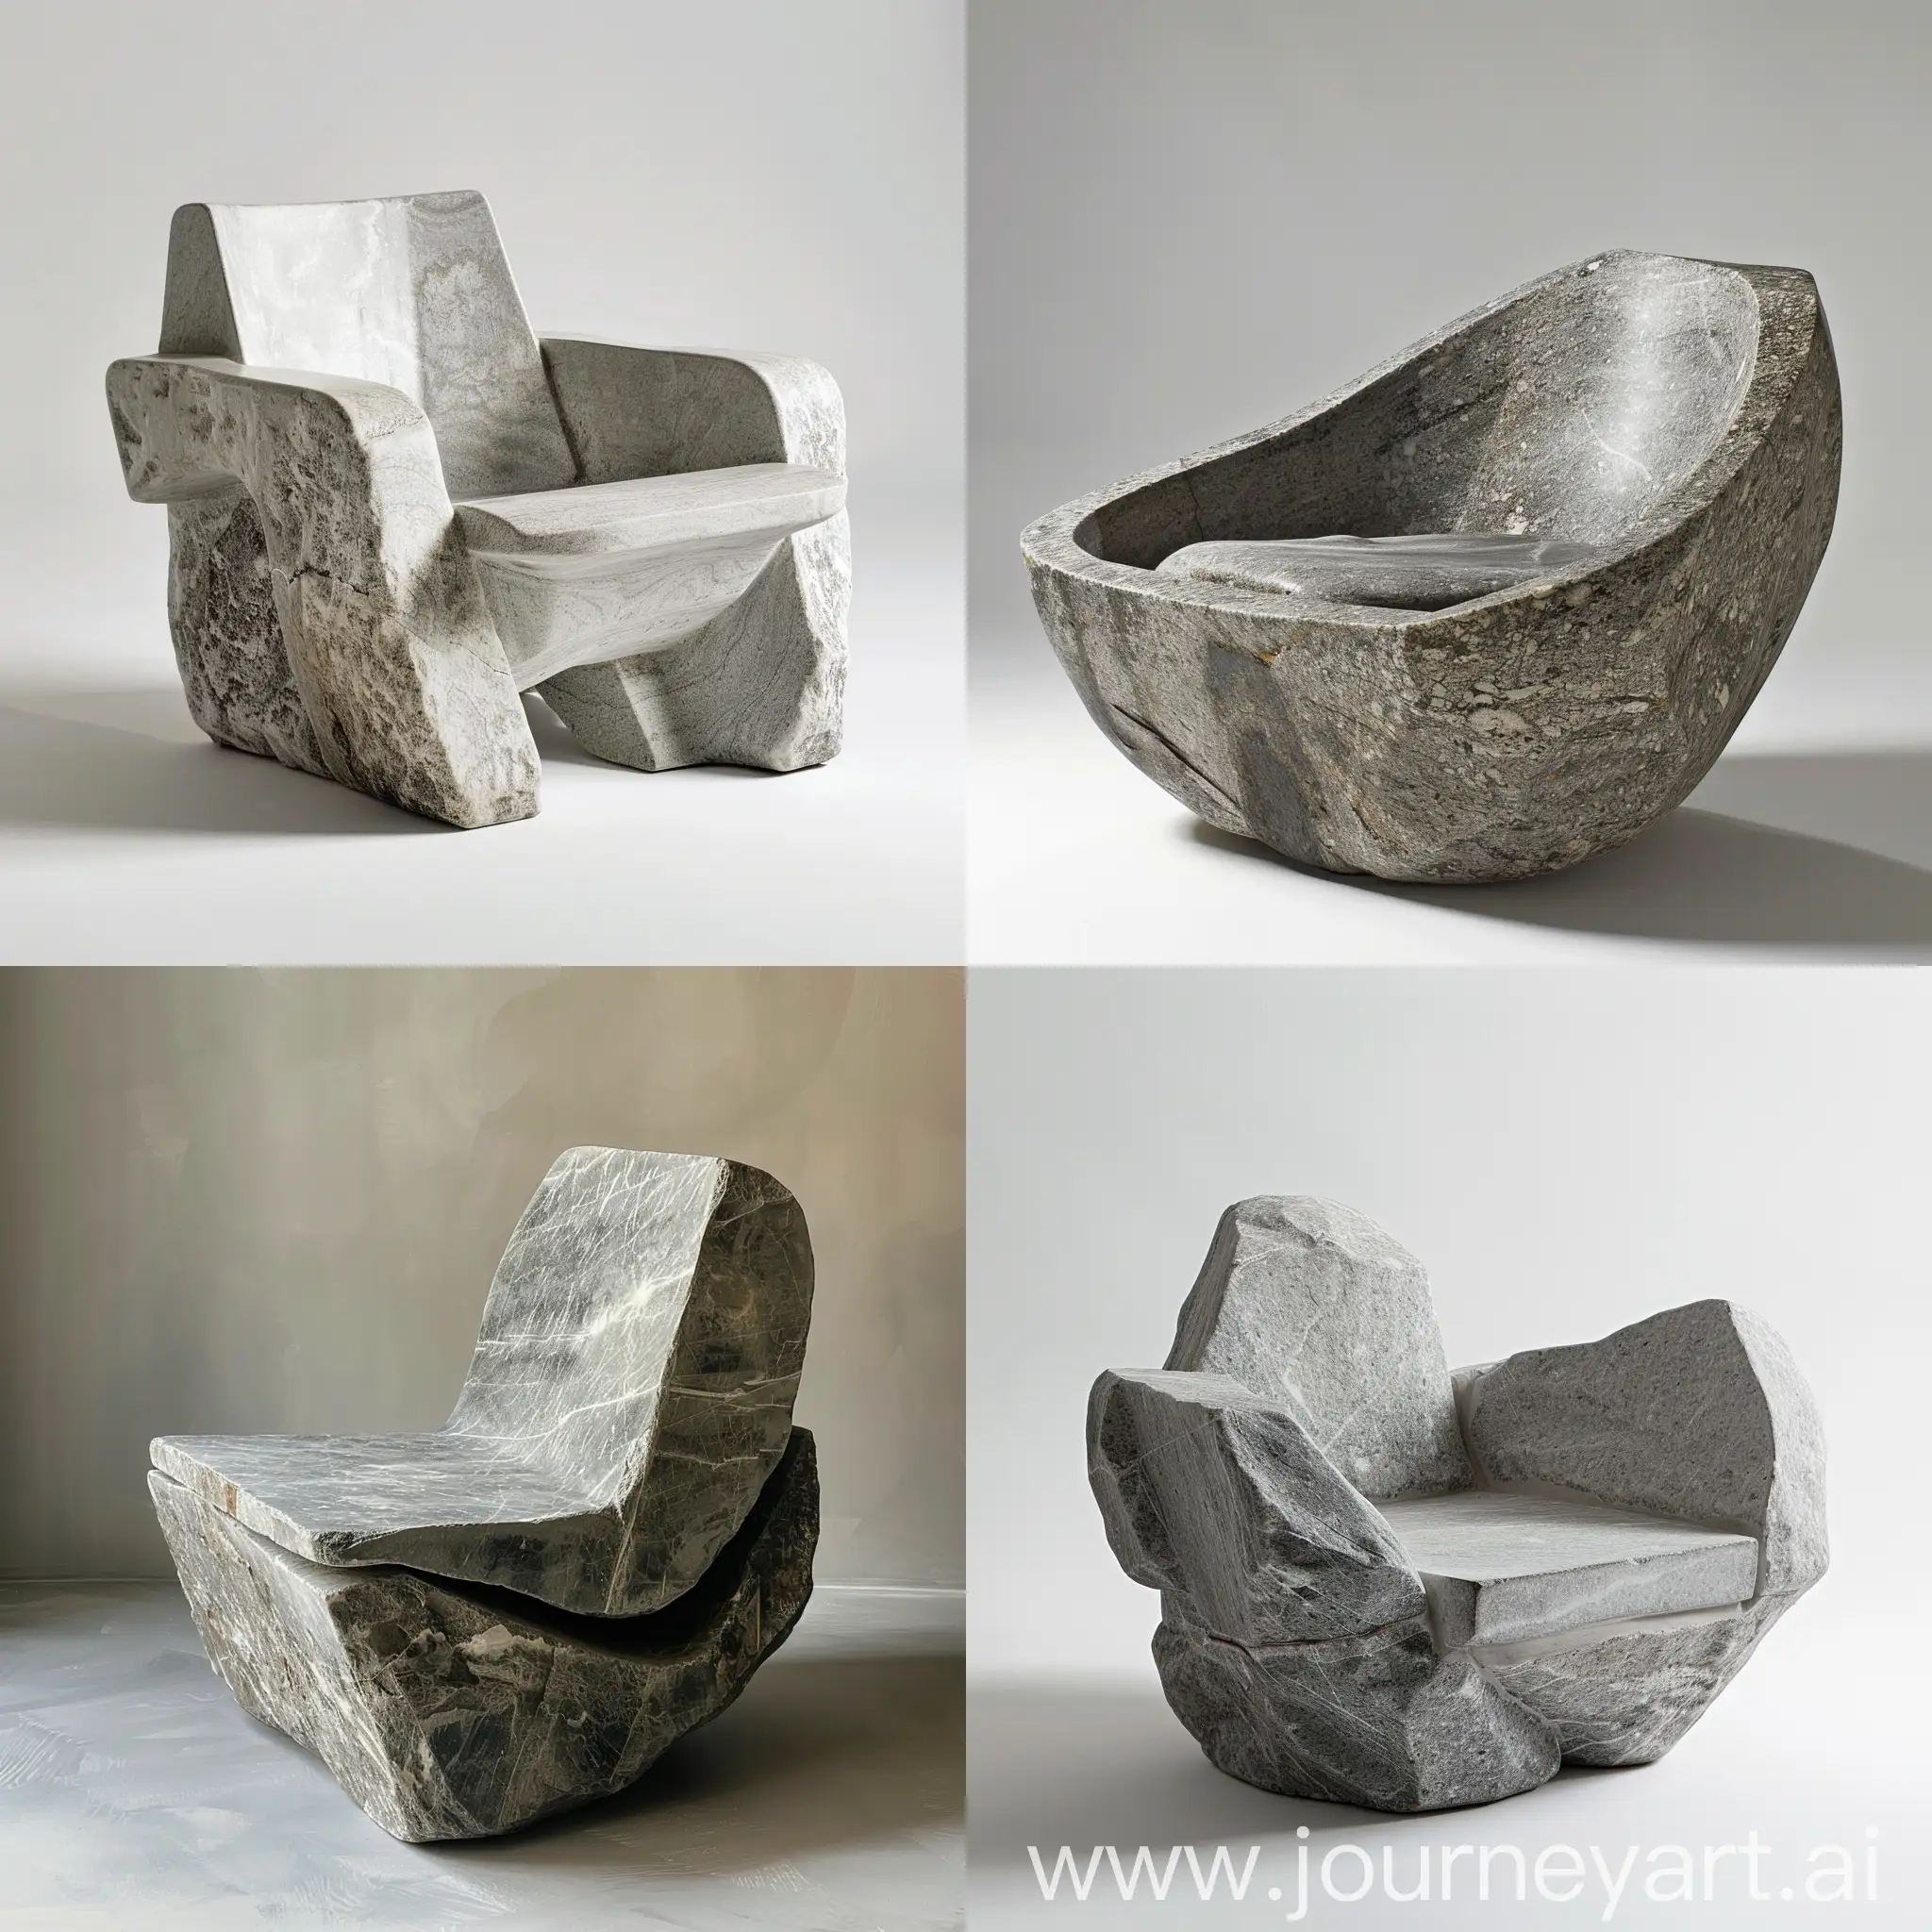 A stone chair